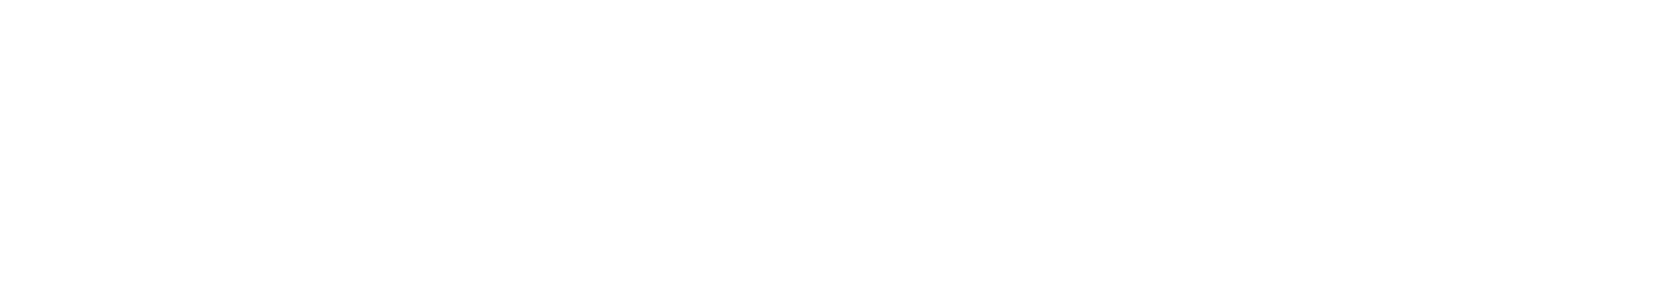 Glencore logo grand pour les fonds sombres (PNG transparent)